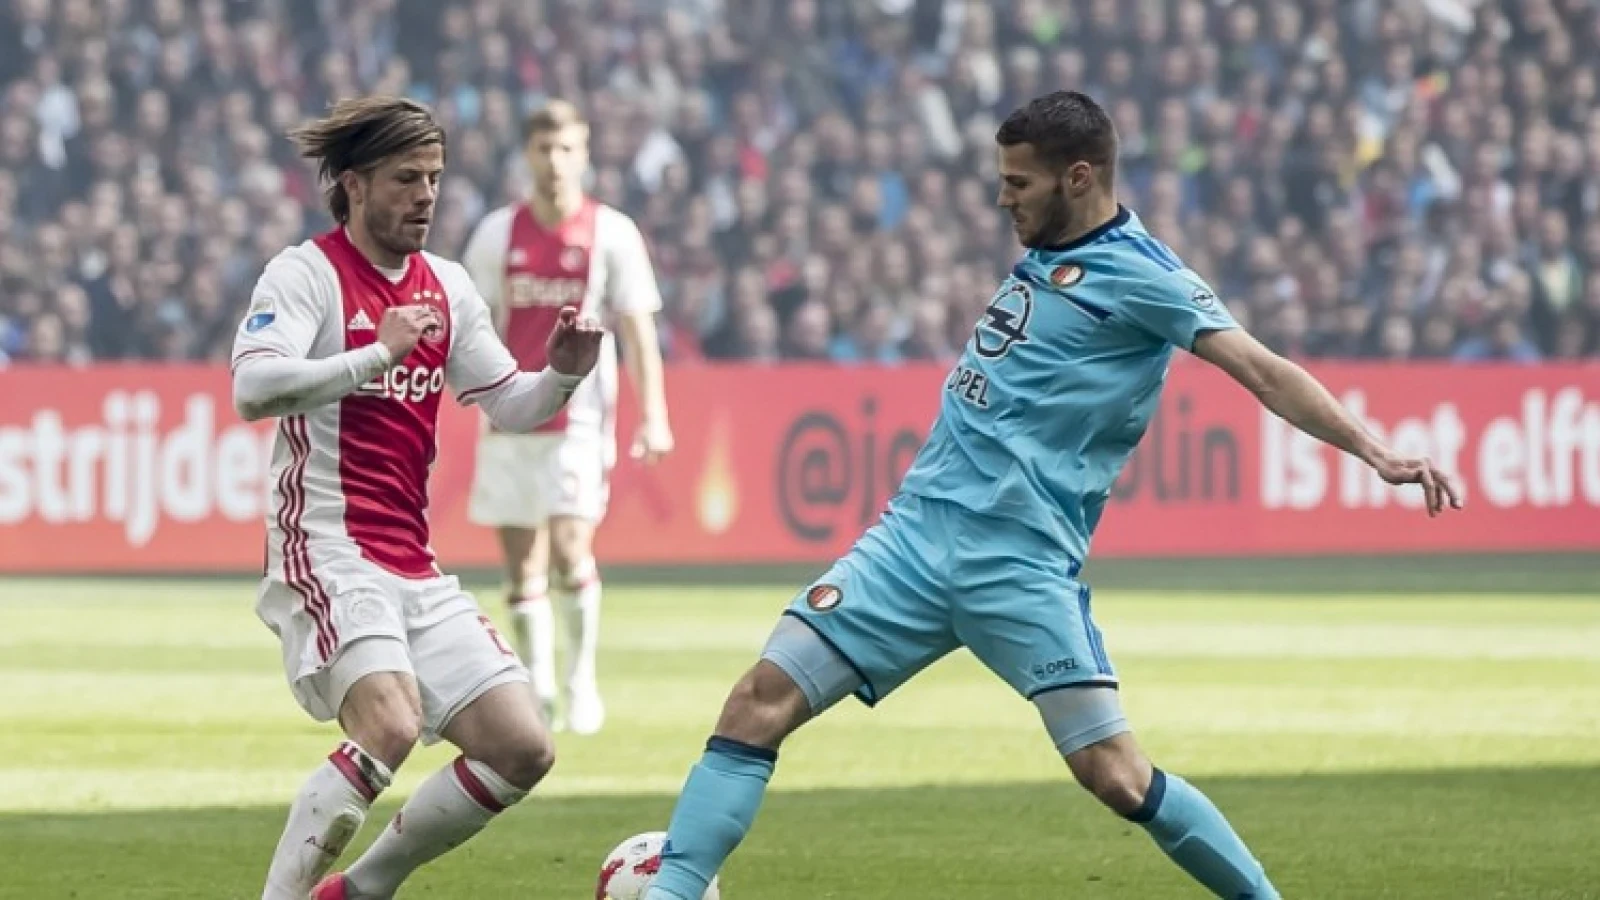 Schöne: 'Die mentale klap voor Feyenoord komt ook, maar dat is zondag pas'